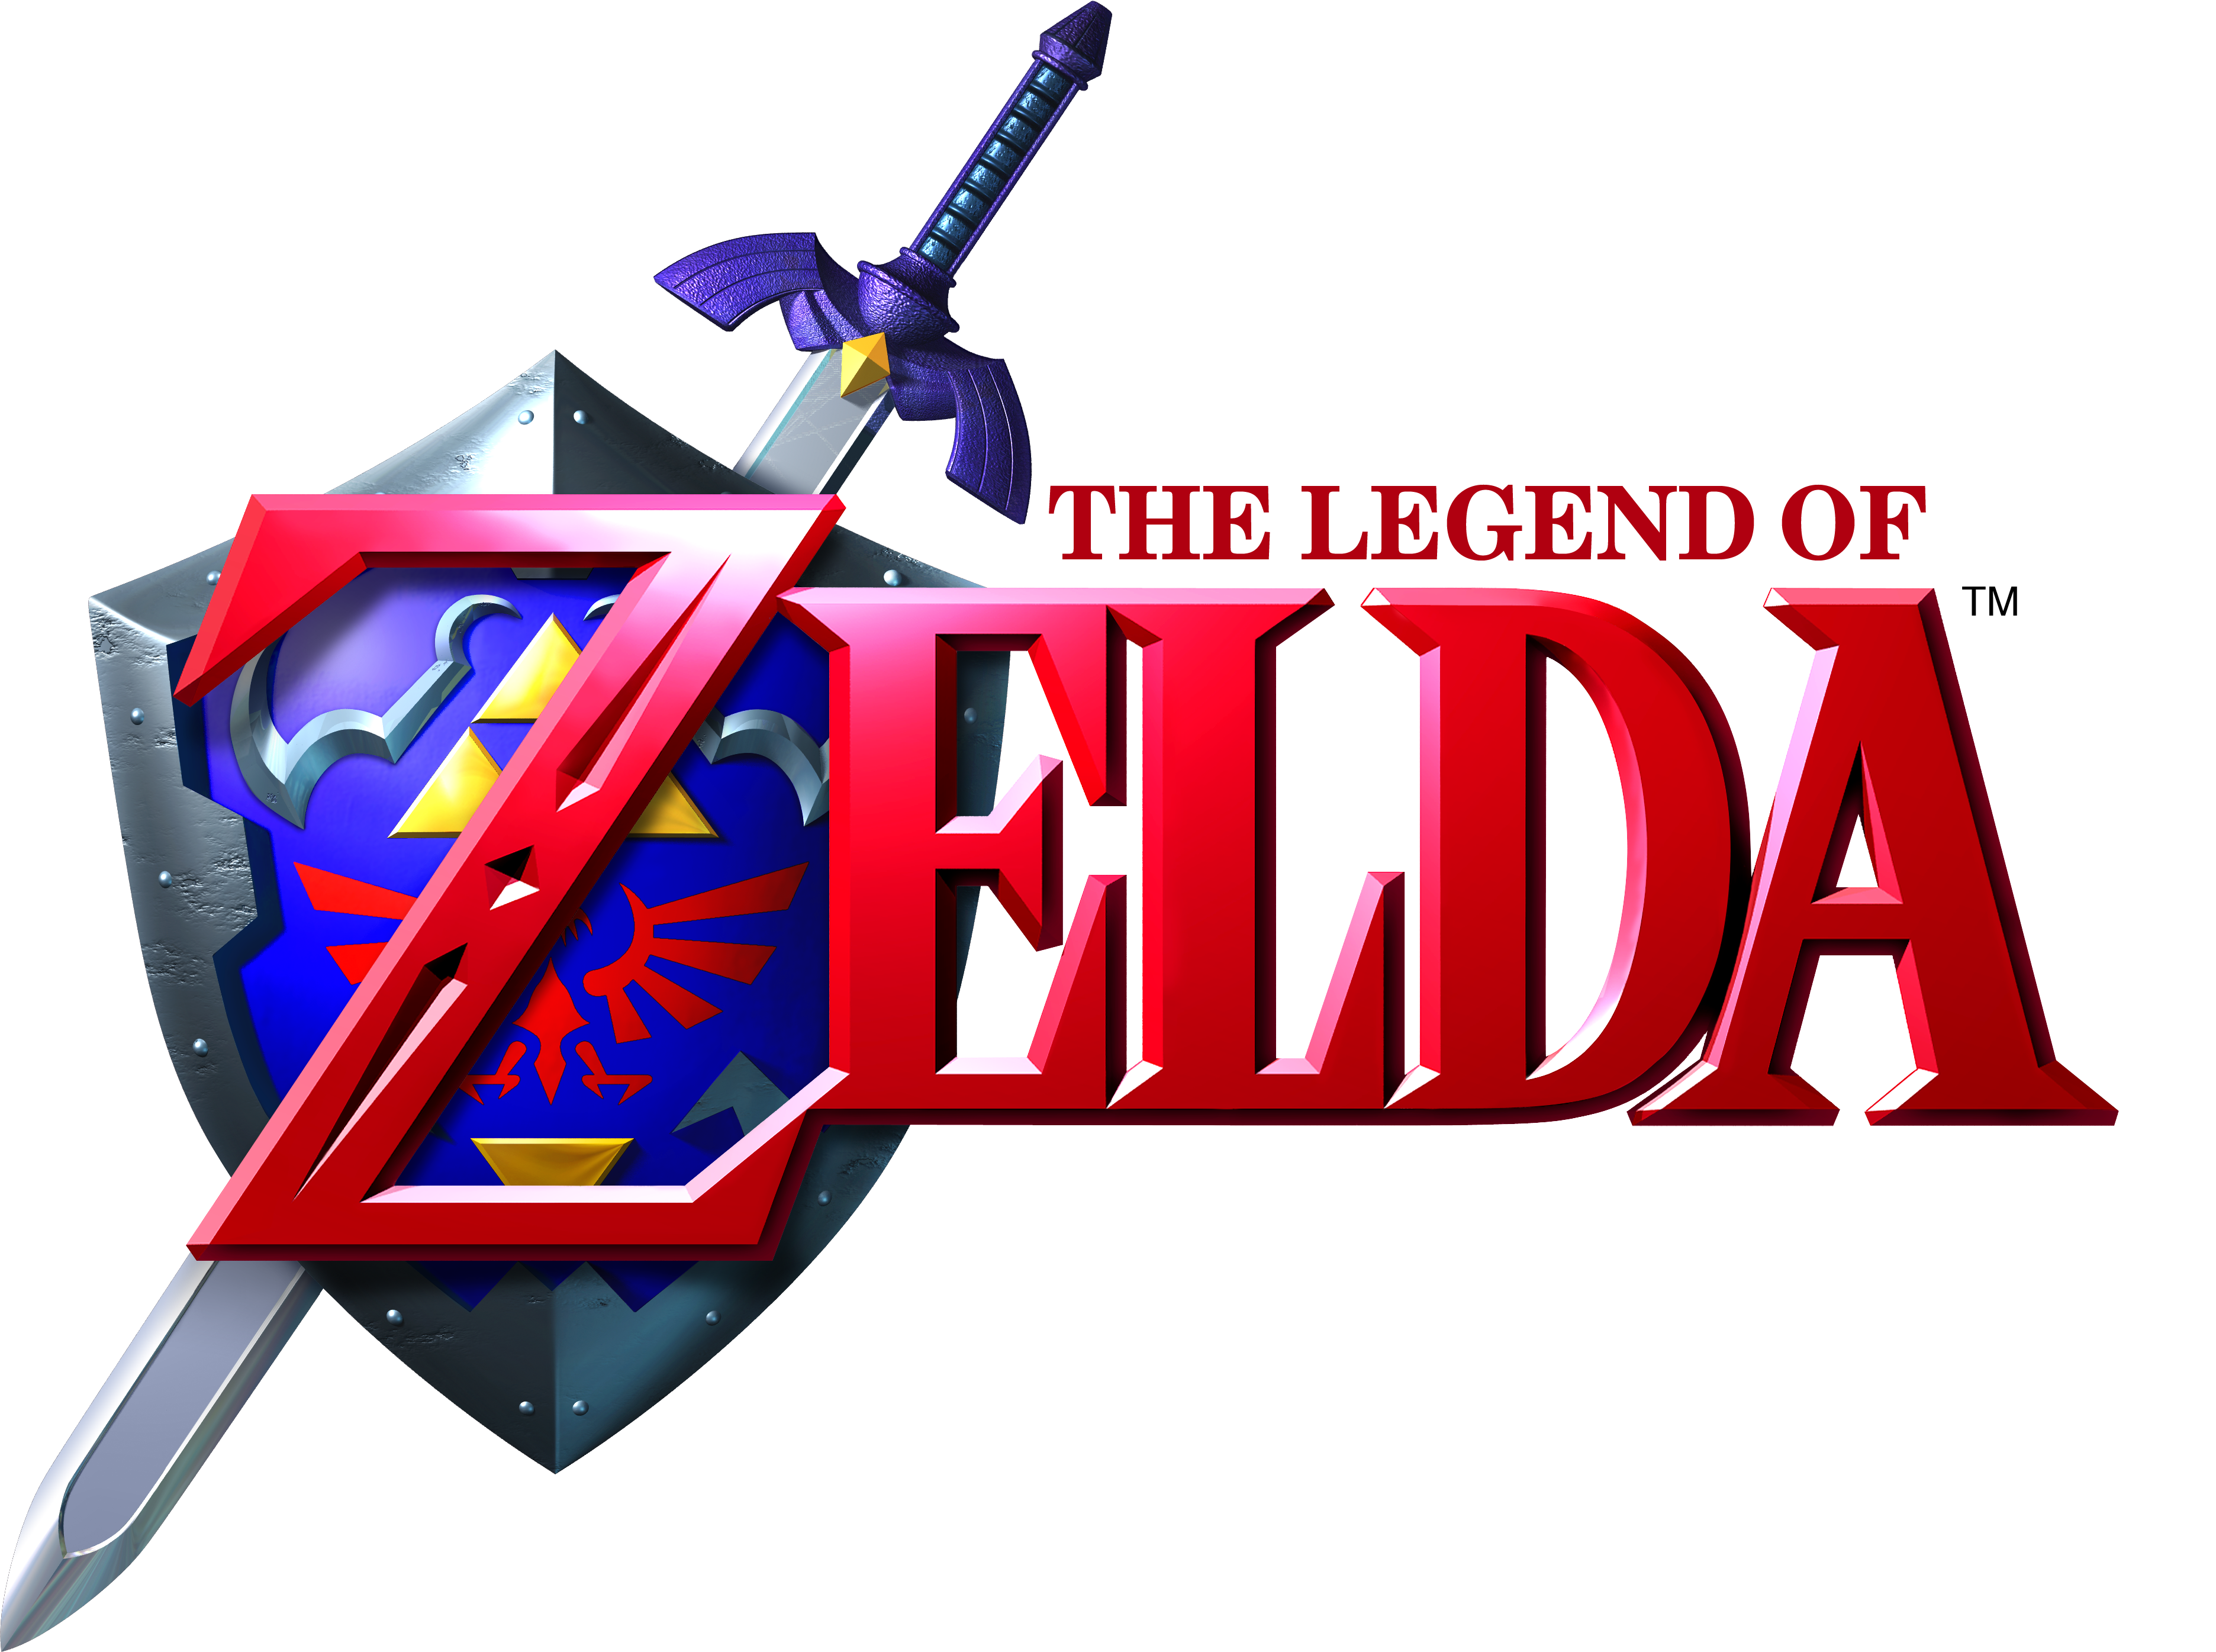 The Legend Of Zelda: Ocarina Of Time Computer Wallpapers, Desktop ...